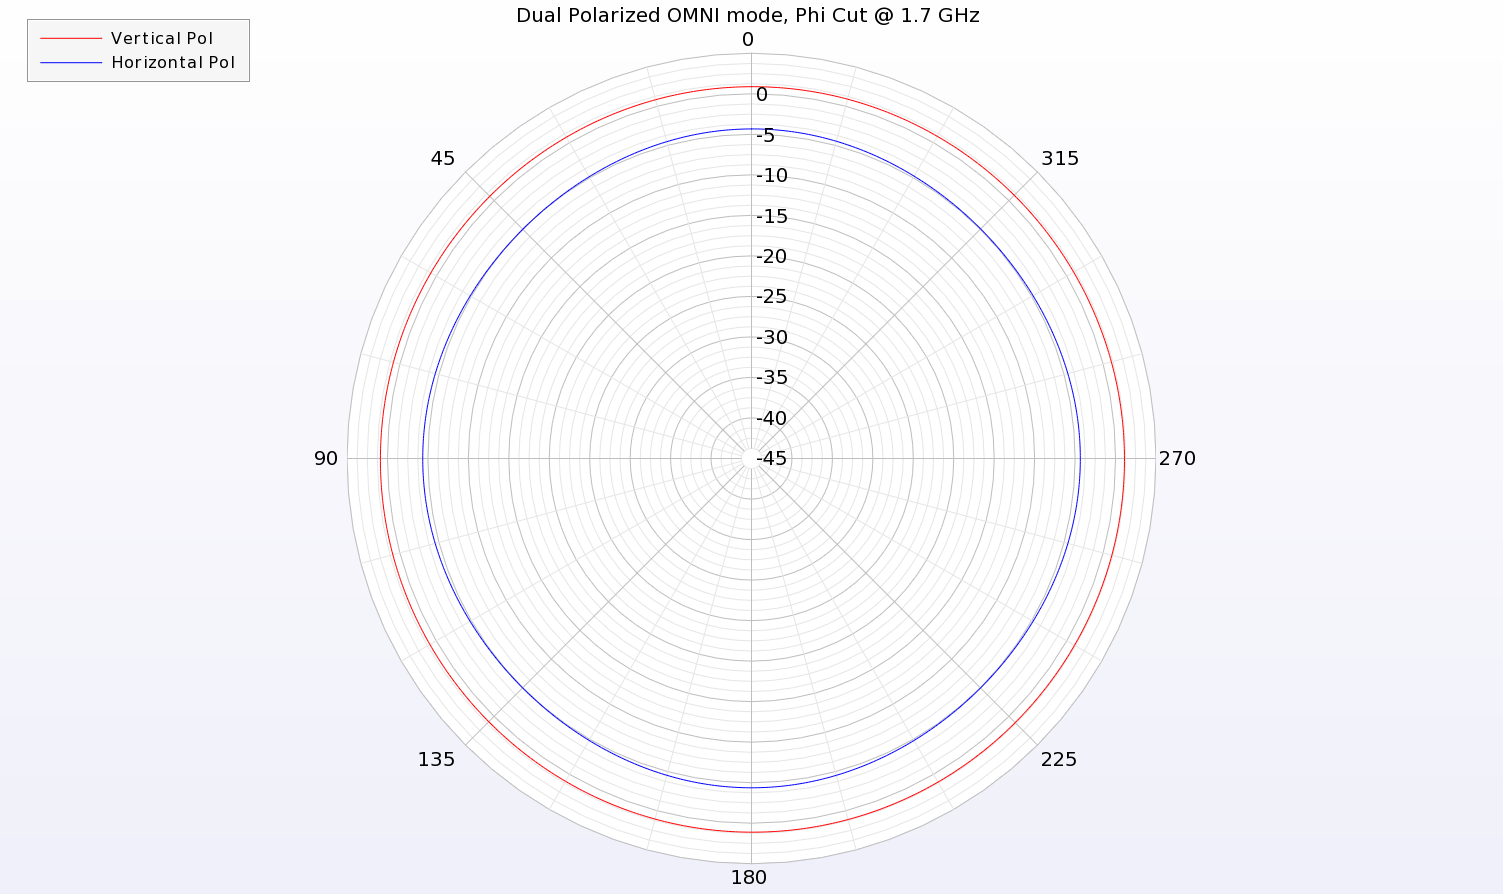 图 12：在双极化 OMNI 模式下，两组阵列都接受馈电，同时产生水平和垂直极化。图中显示的是 1.7 GHz 频率下的图案方位角切面，可以看到垂直和水平图案...